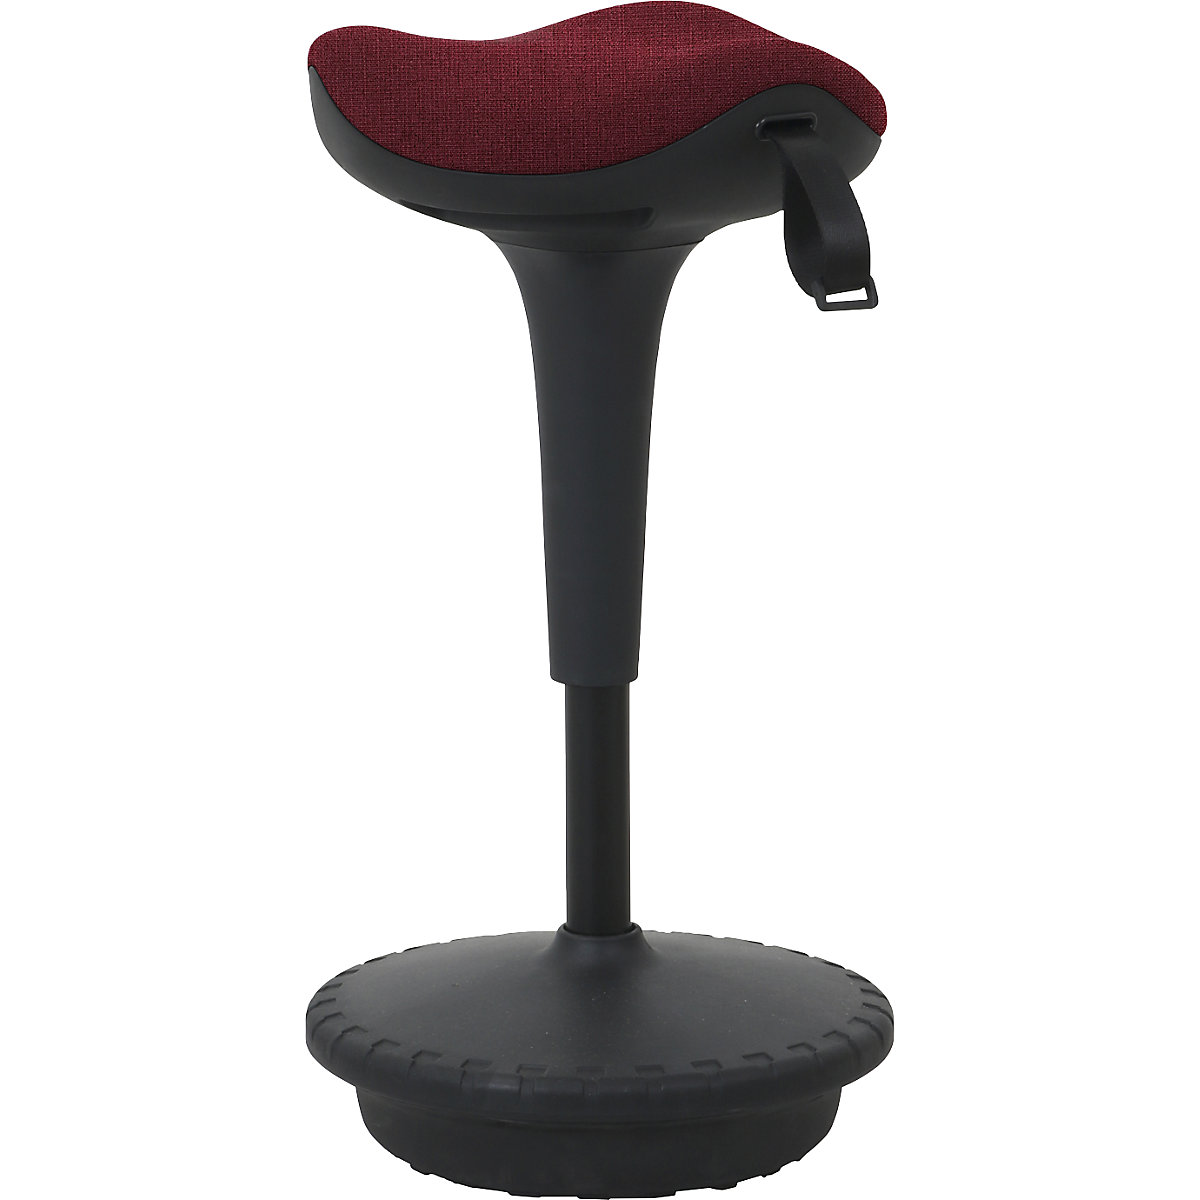 Apoio de pé 6156 – Twinco, assento triangular 325 mm, forro vermelho-4